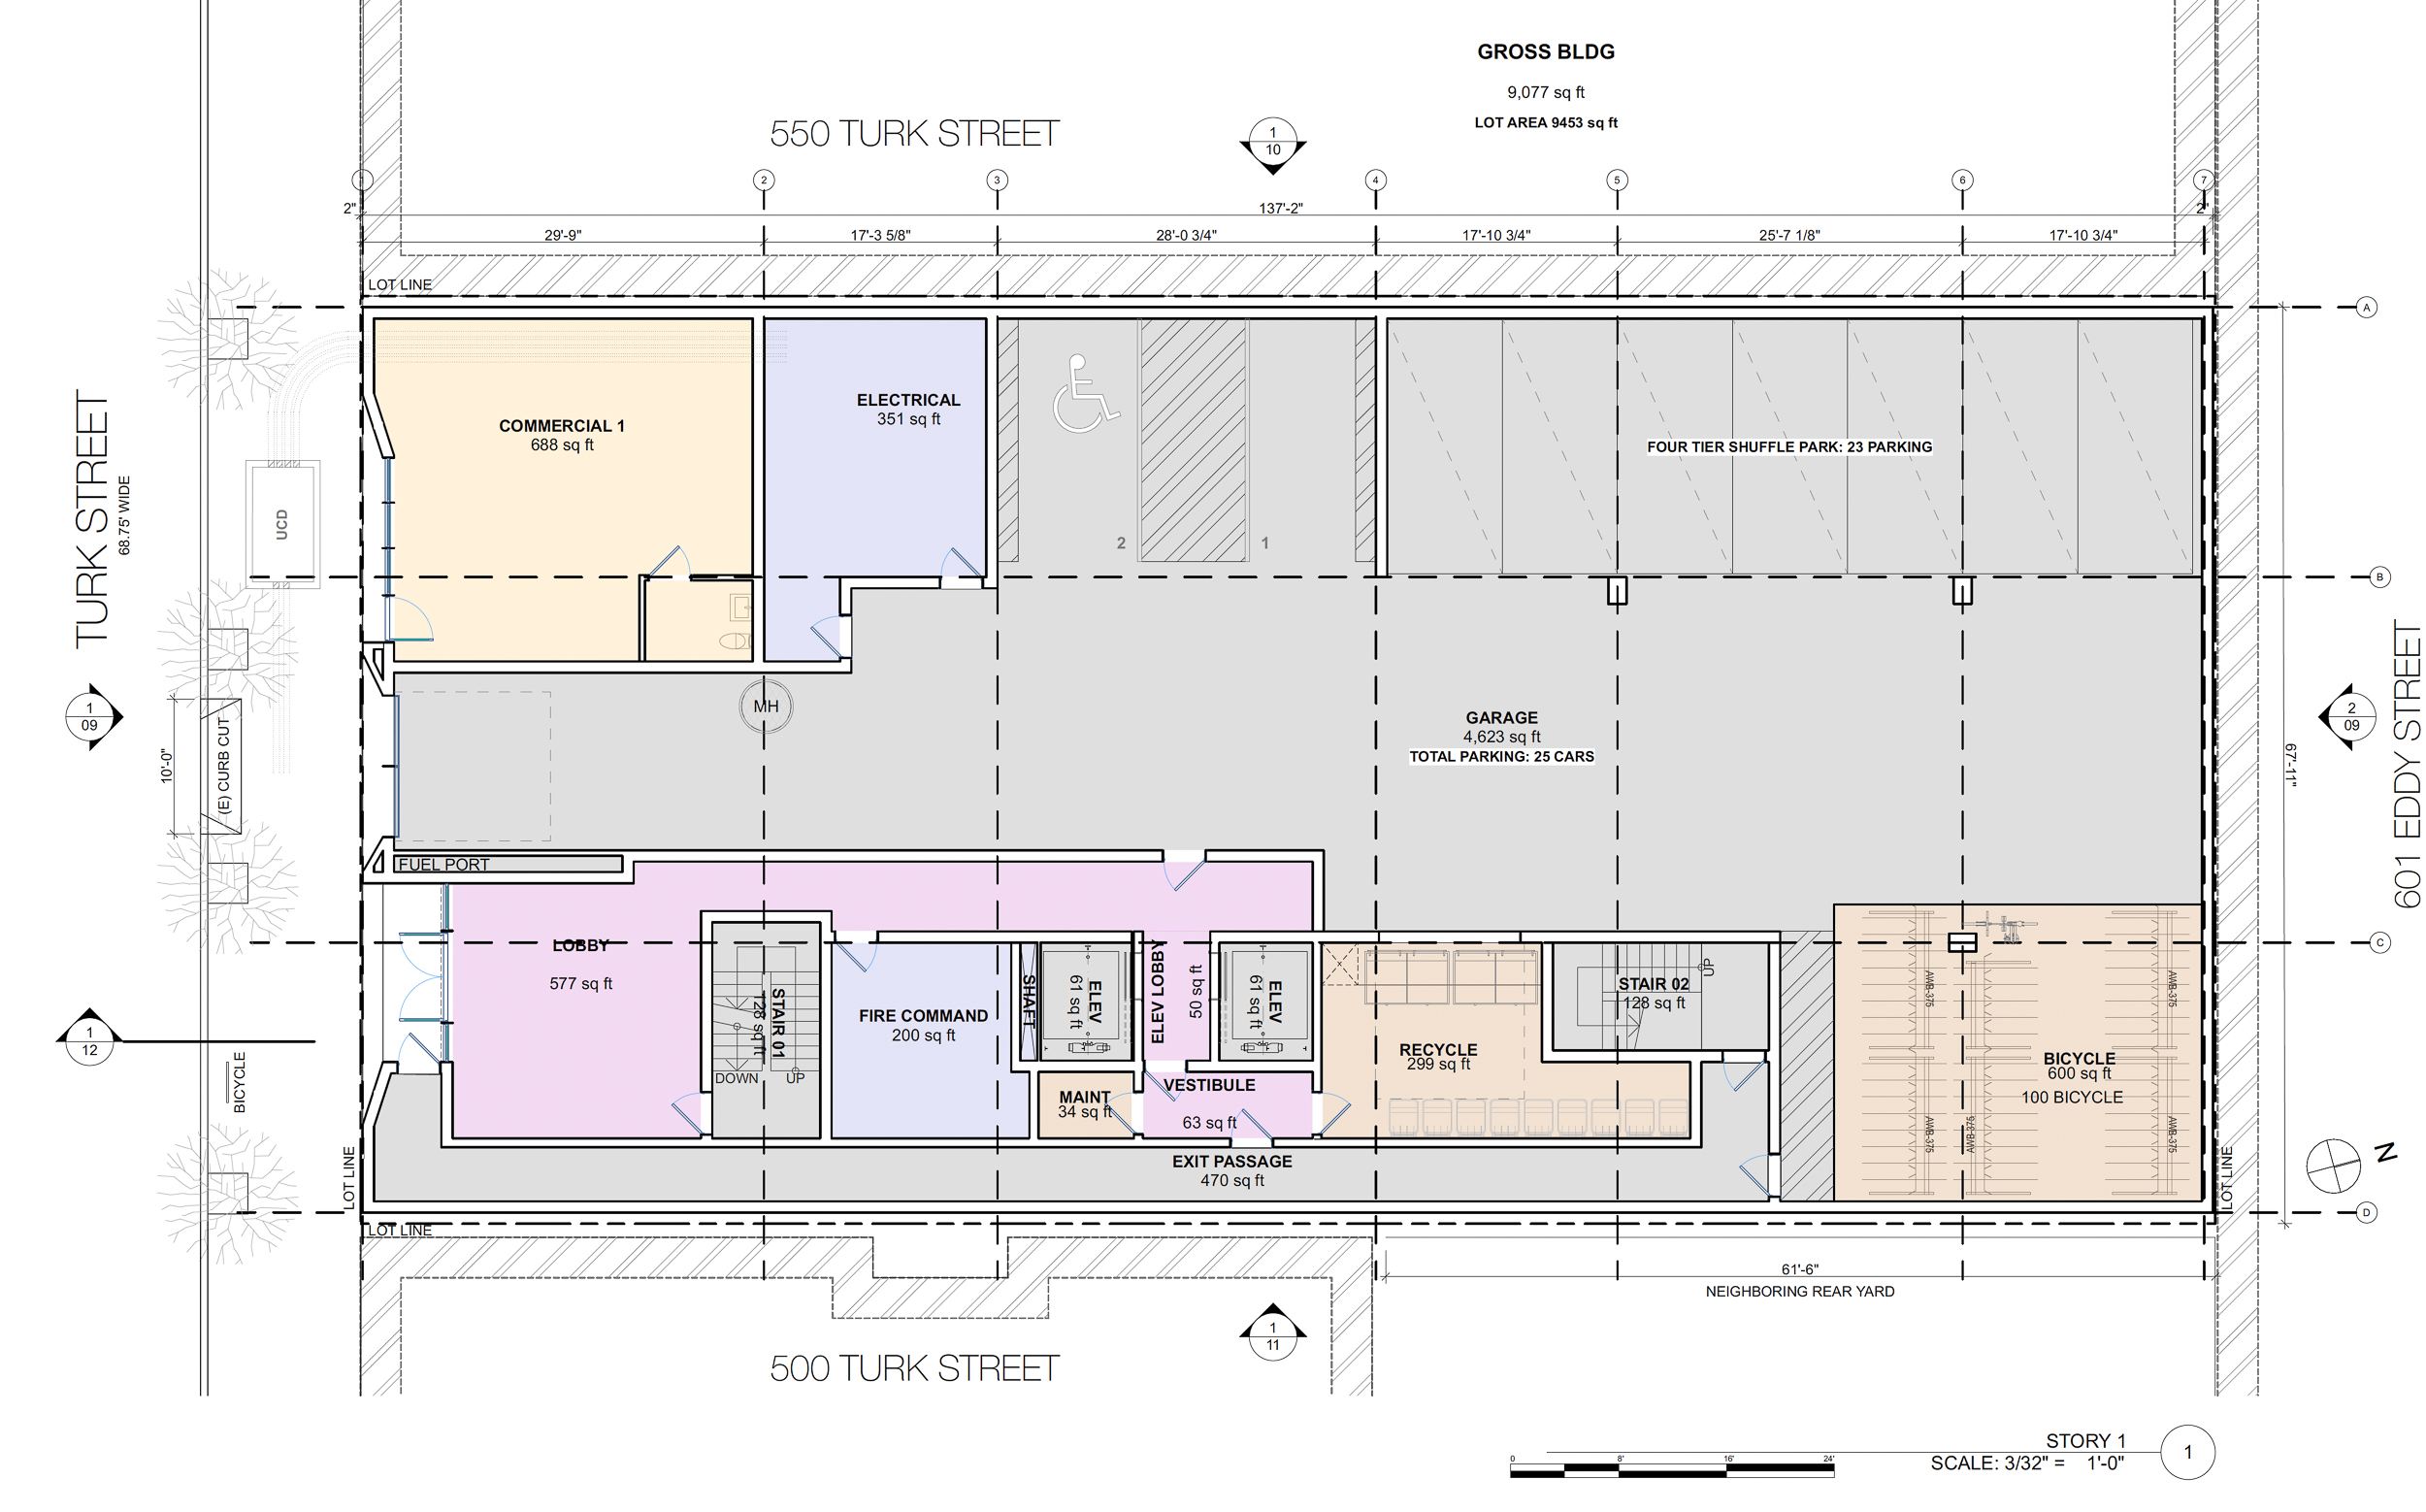 530 Turk Street ground level floor plan, illustration by RG Architecture